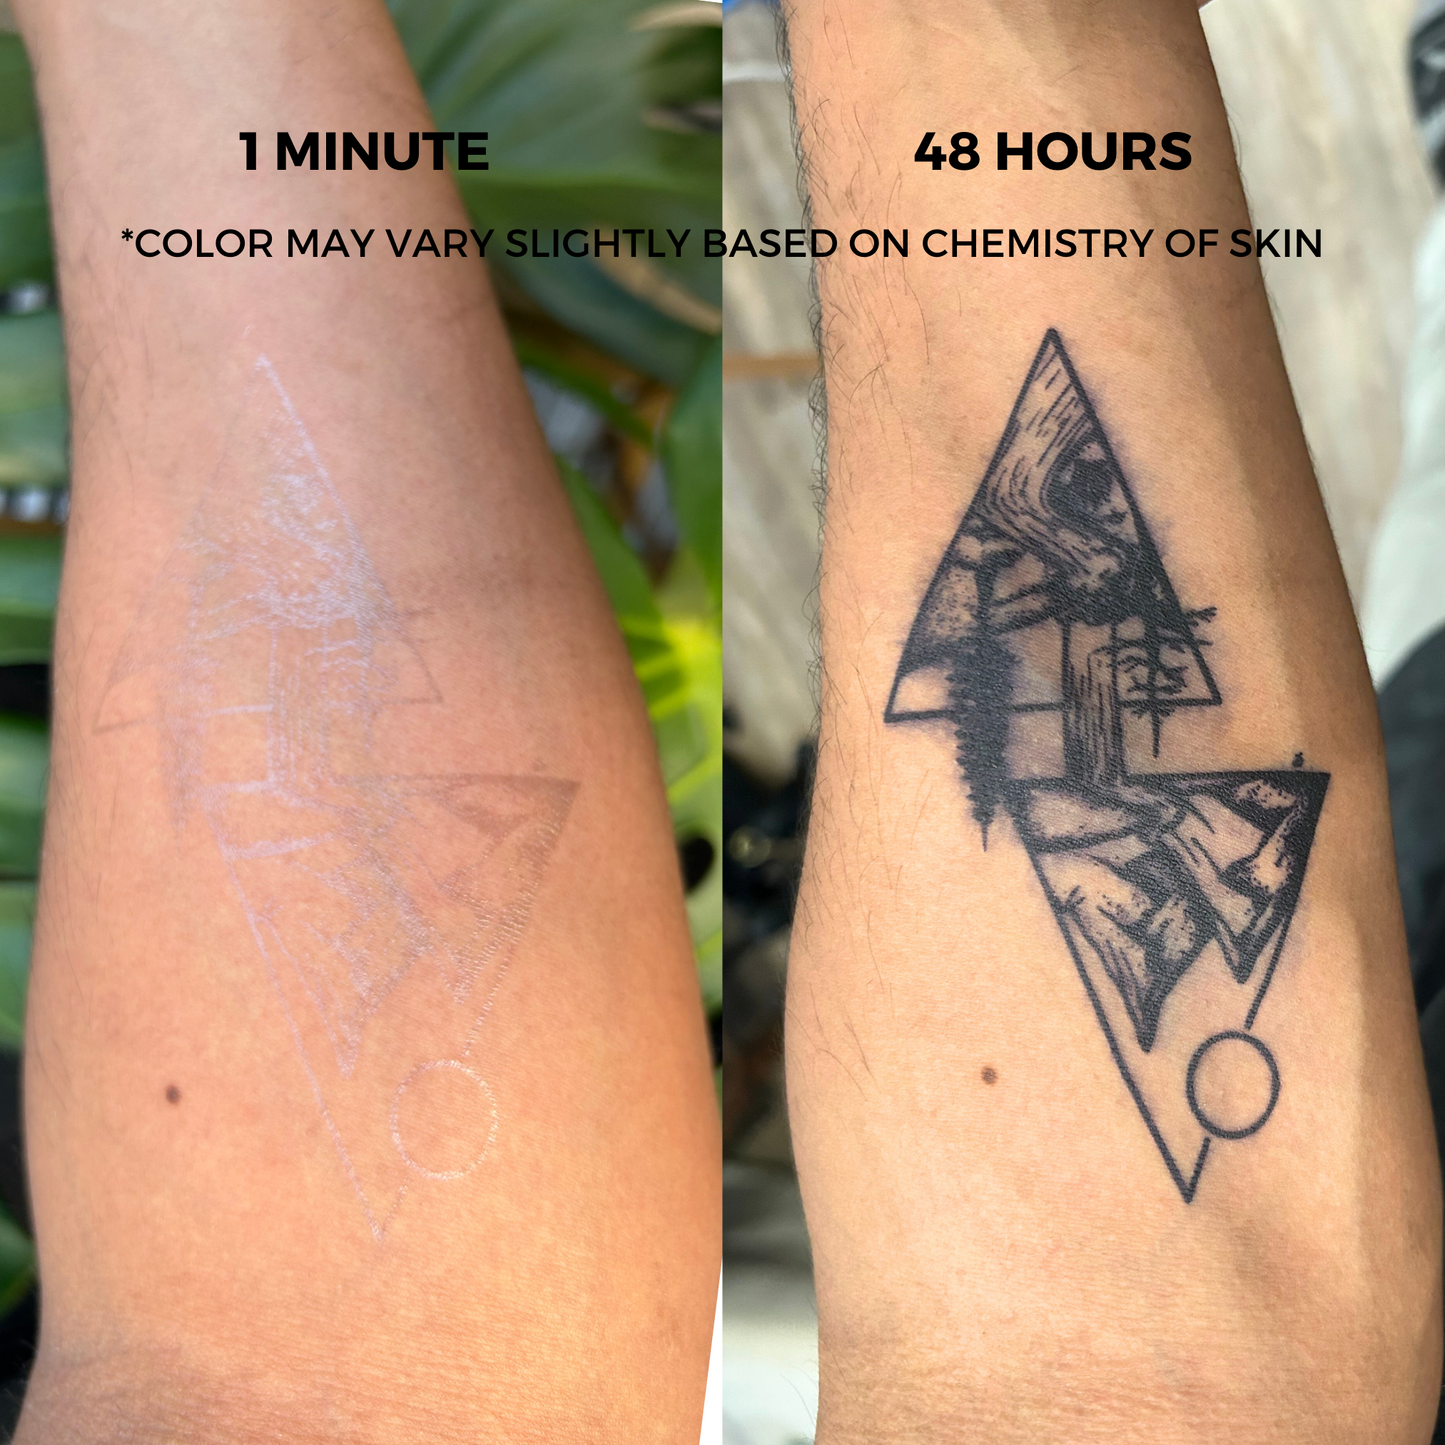 Long Line Tattoo | 2 Week Temporary Tattoo | Minimalist Tattoo | Abstract Tattoo | Plant Based Vegan Tattoo | Festival Tattoo | Geometric Tattoo